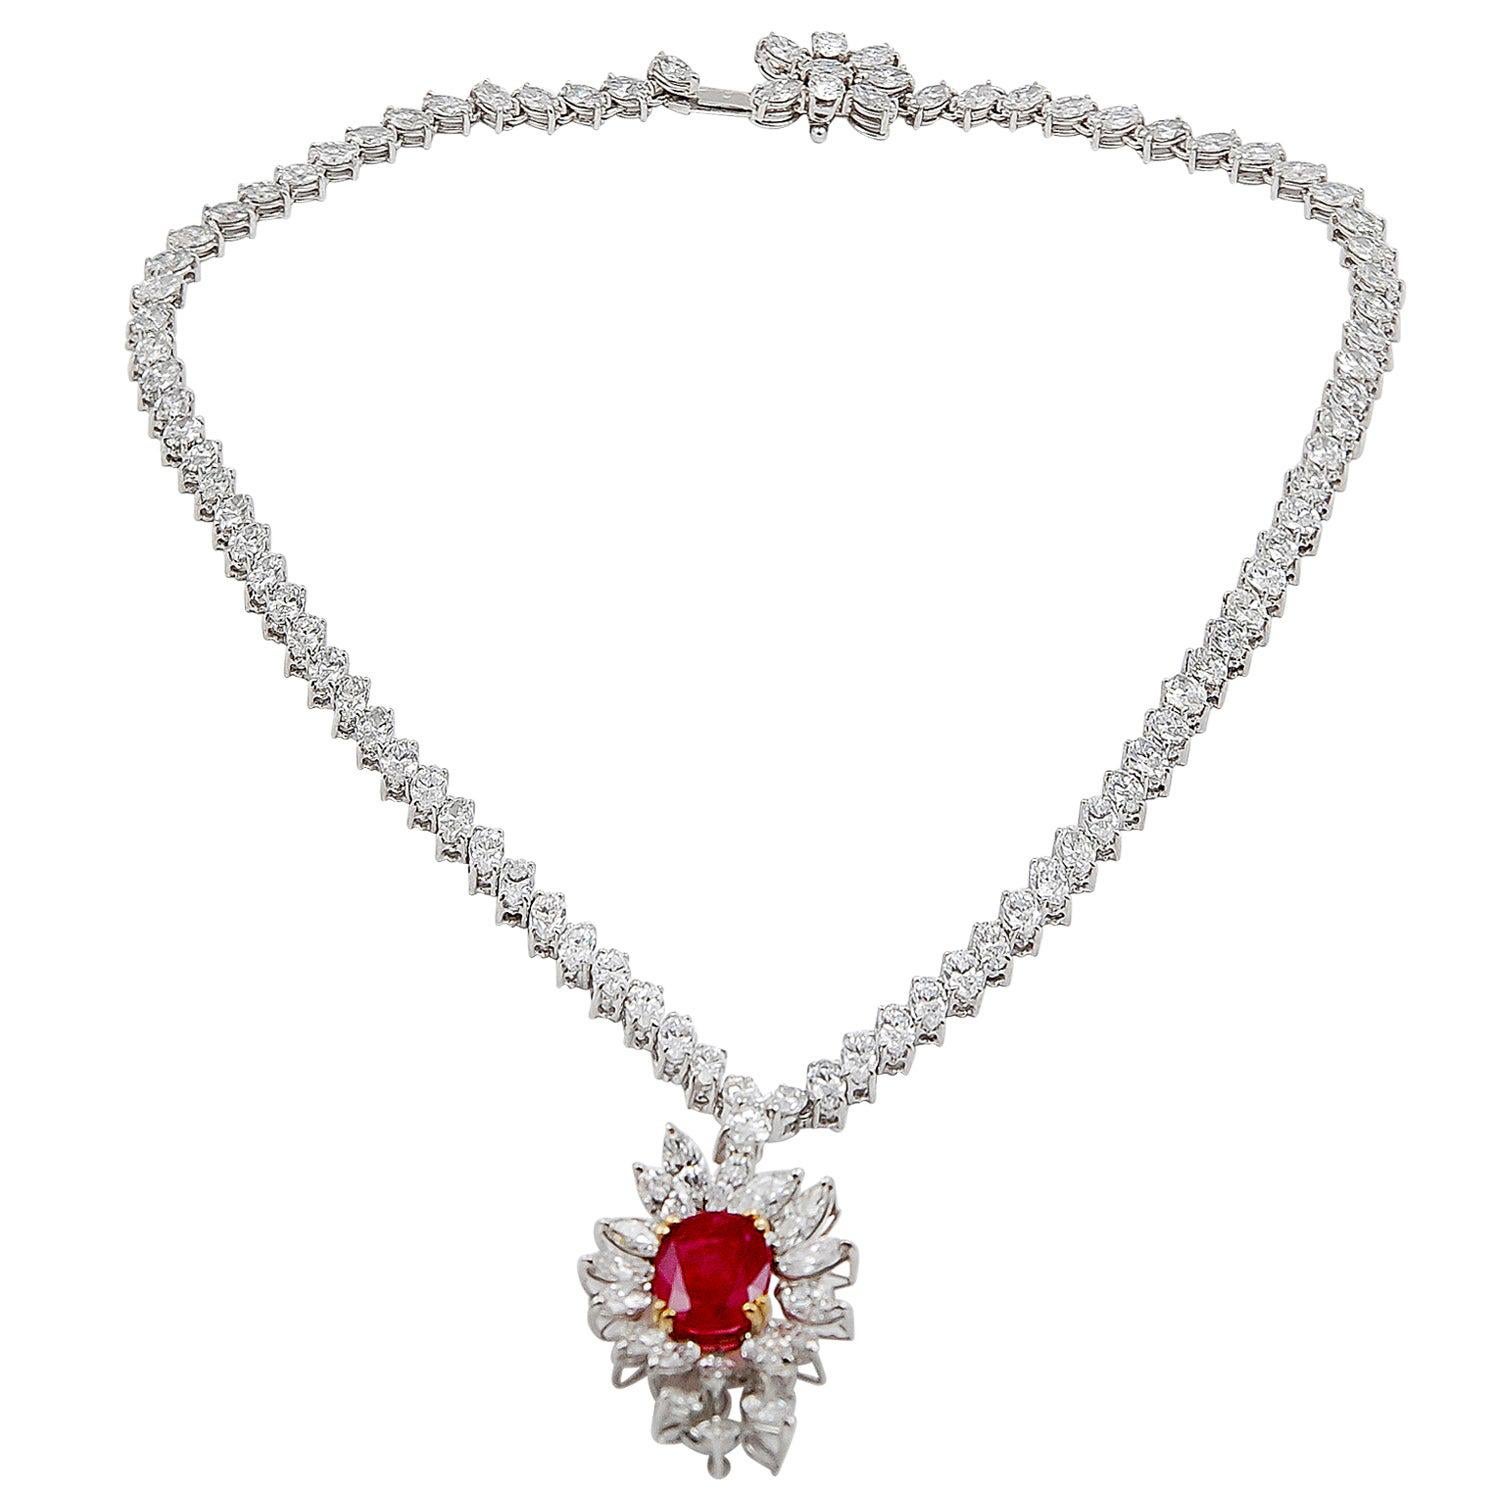 Lv Necklace - 46 For Sale on 1stDibs  lv logo necklace, lv iconic necklace,  lv necklaces